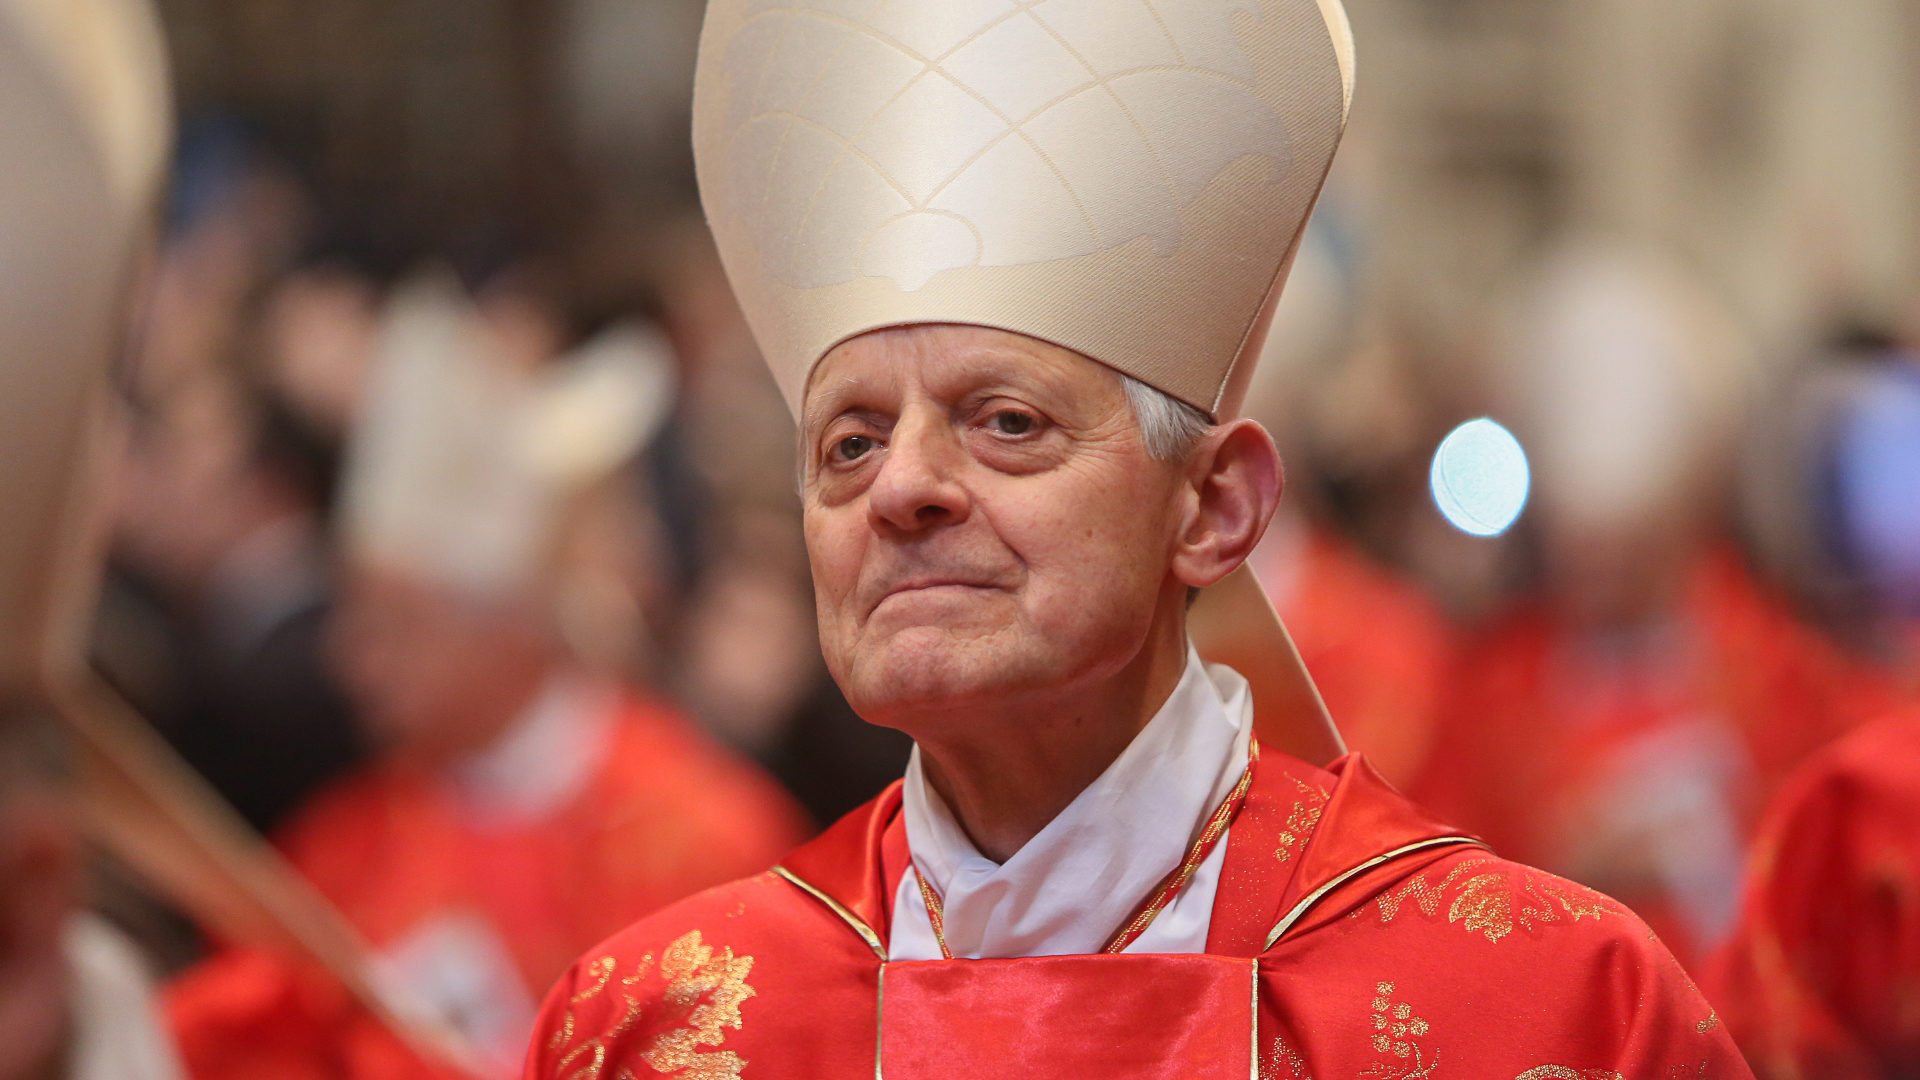 Le cardinal Donald Wuerl est mis en cause pour sa gestion de cas d'abus sexuels | © Flickr/bostoncatholic